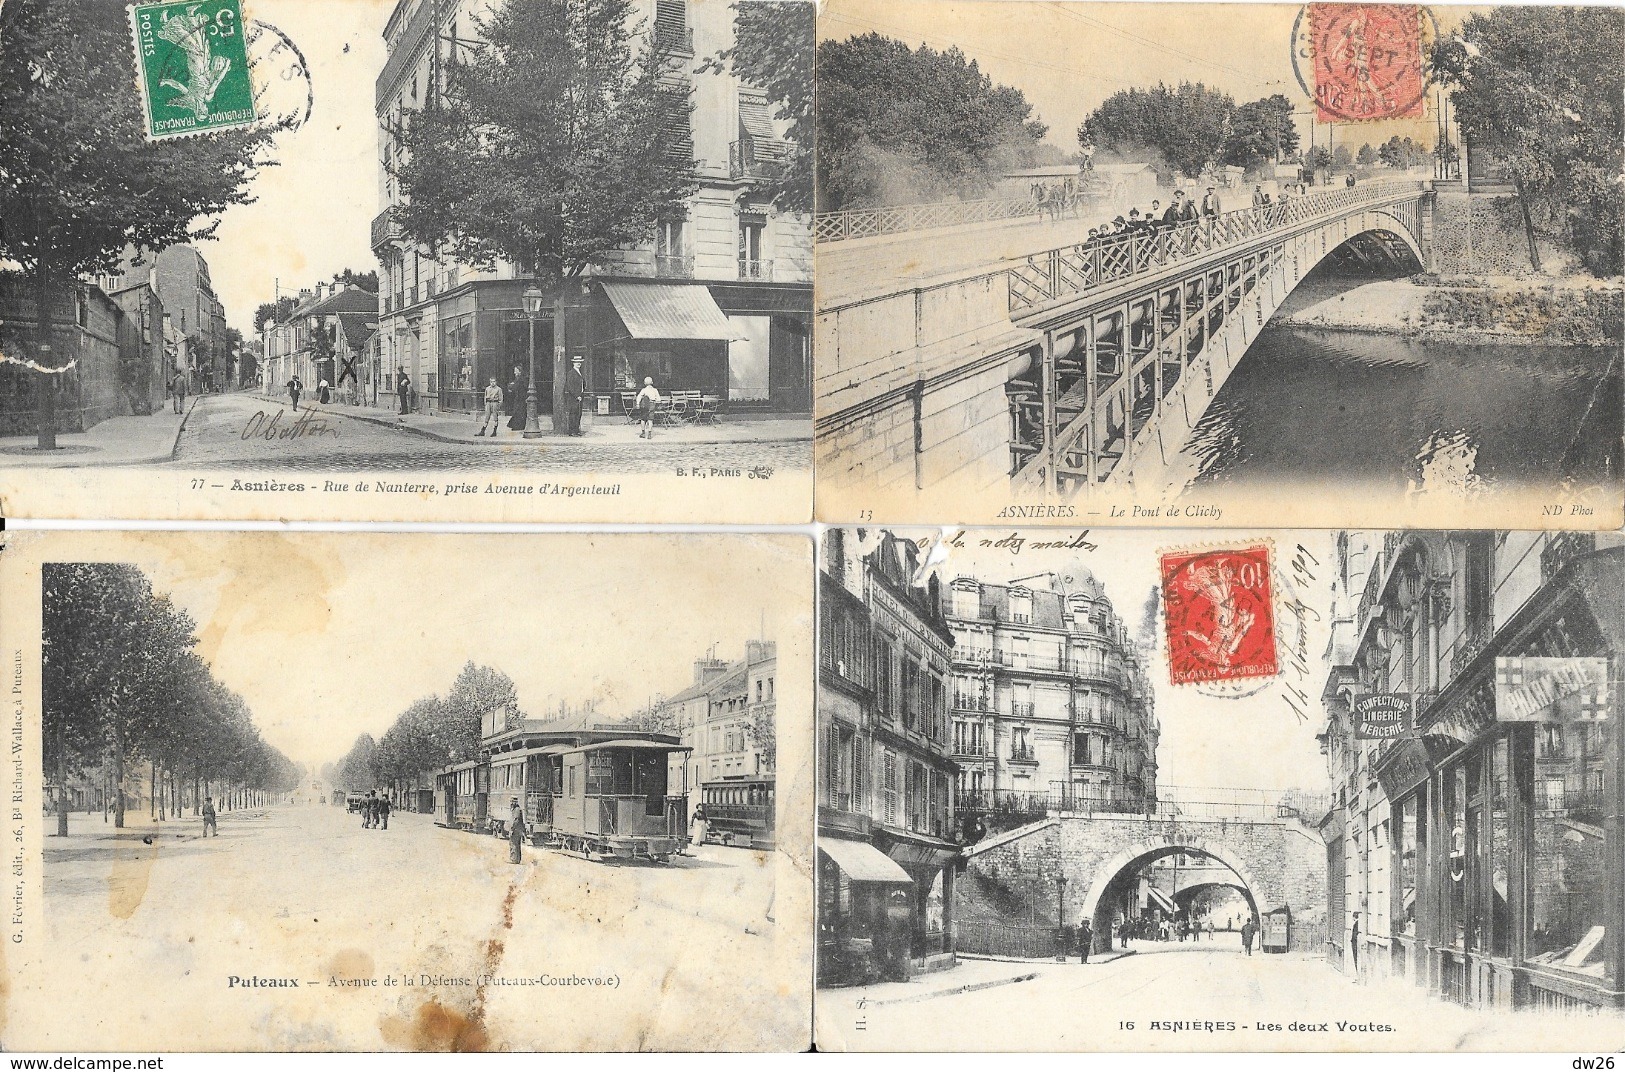 Lot n° 99 - 100 cartes du département Seine-et-Oise (Hauts de Seine 92) - Villes, villages, parcs, quelques animations